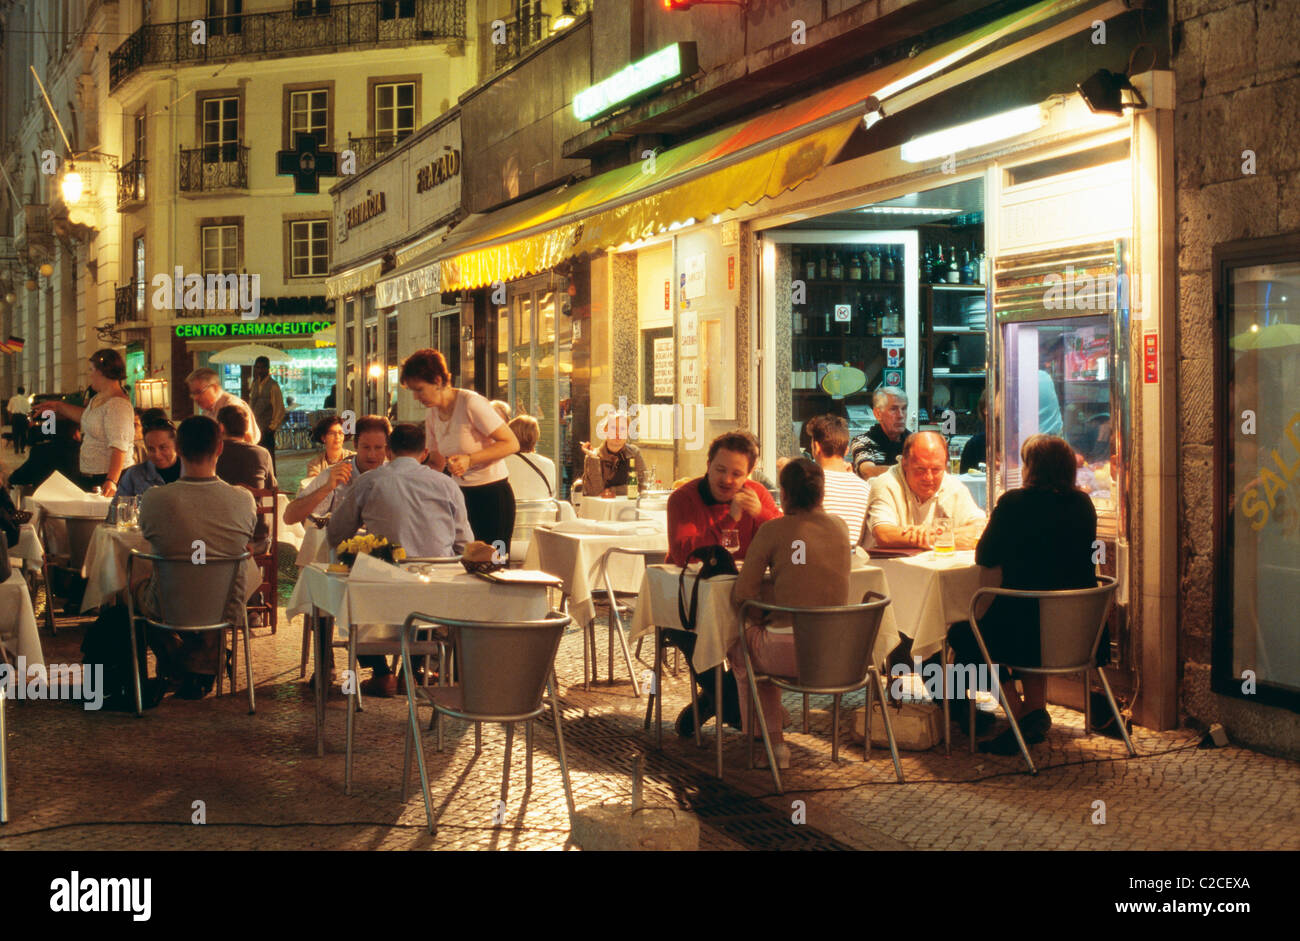 Ruelles de quartier de Baixa comme Rua das Portas S Antao encombrée de petits restaurants où les gens mangent à des tables sur la rue Banque D'Images